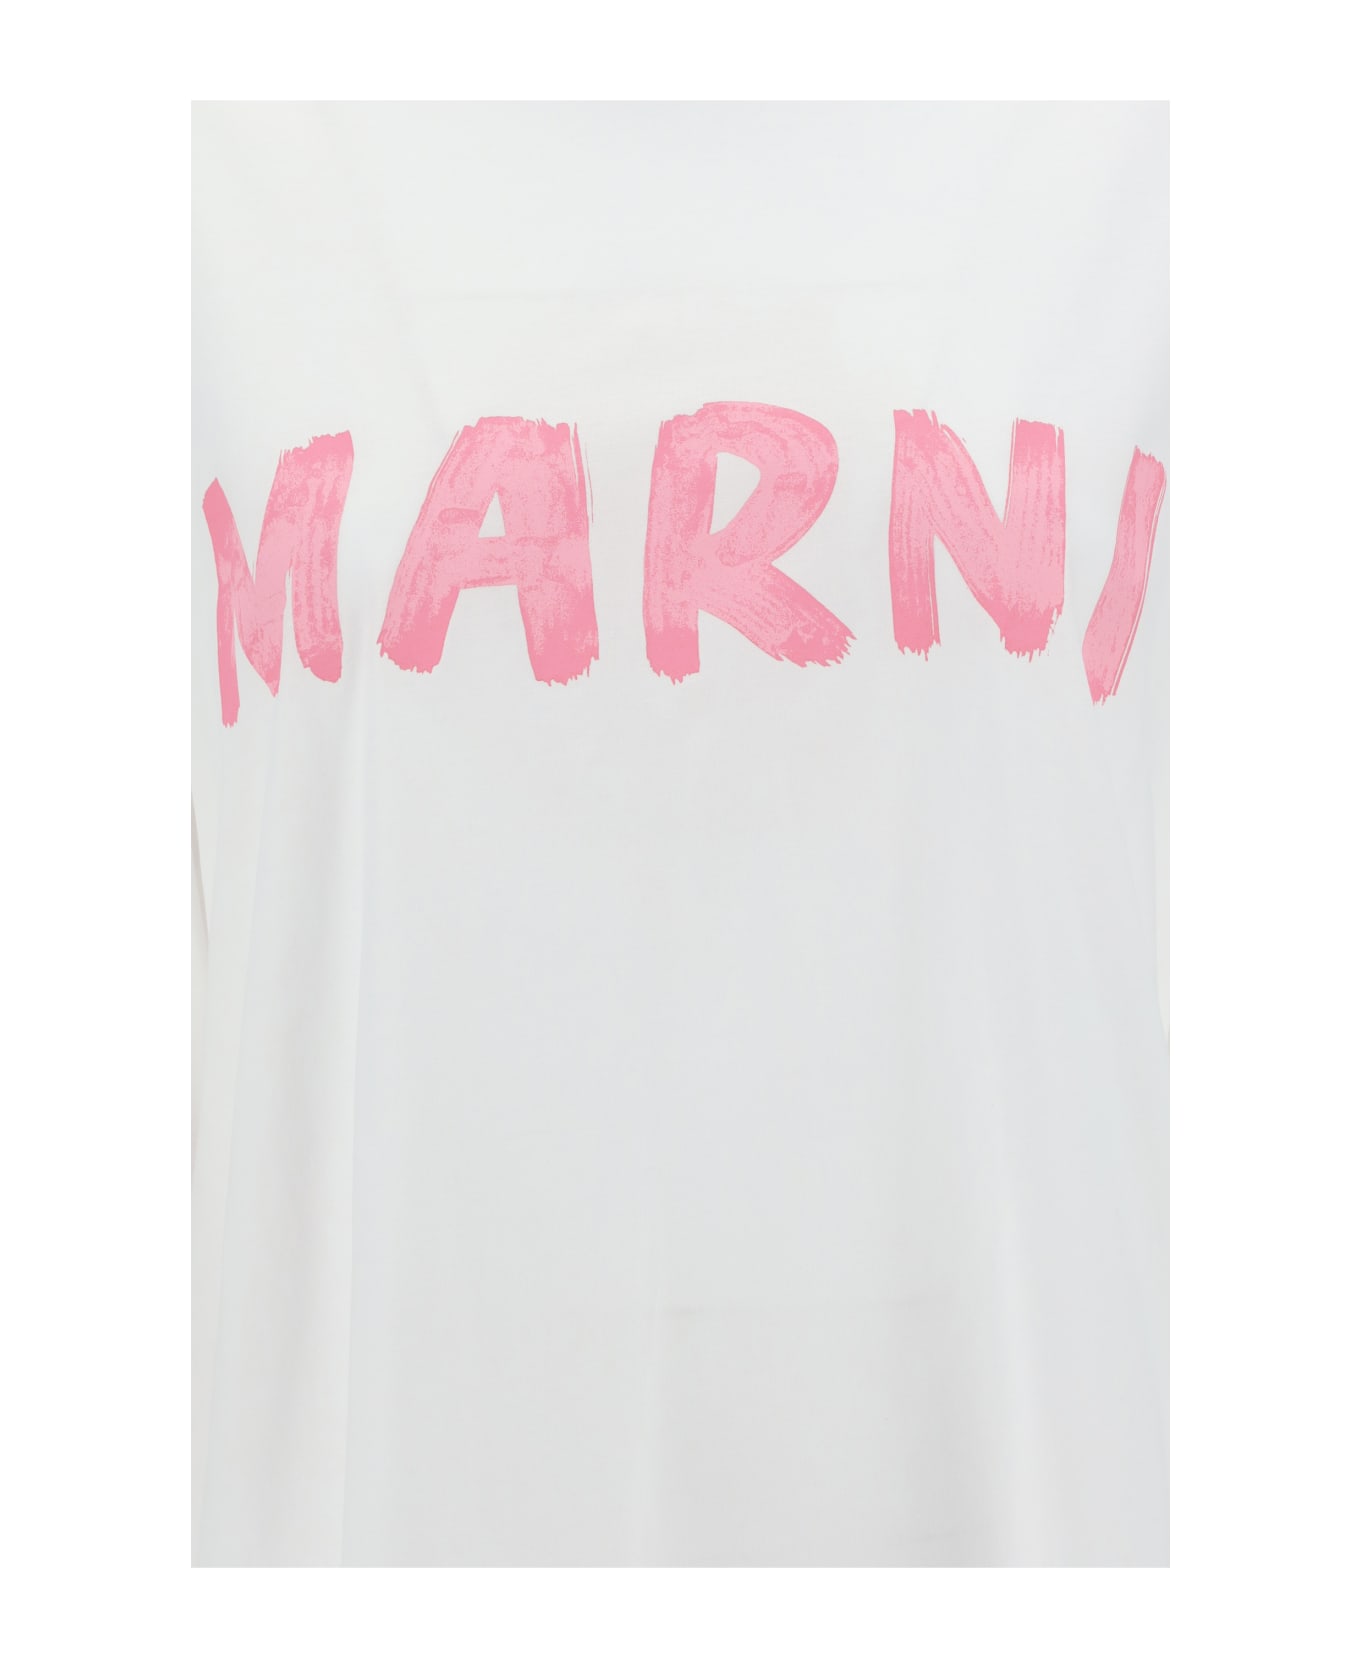 Marni T-shirt - White